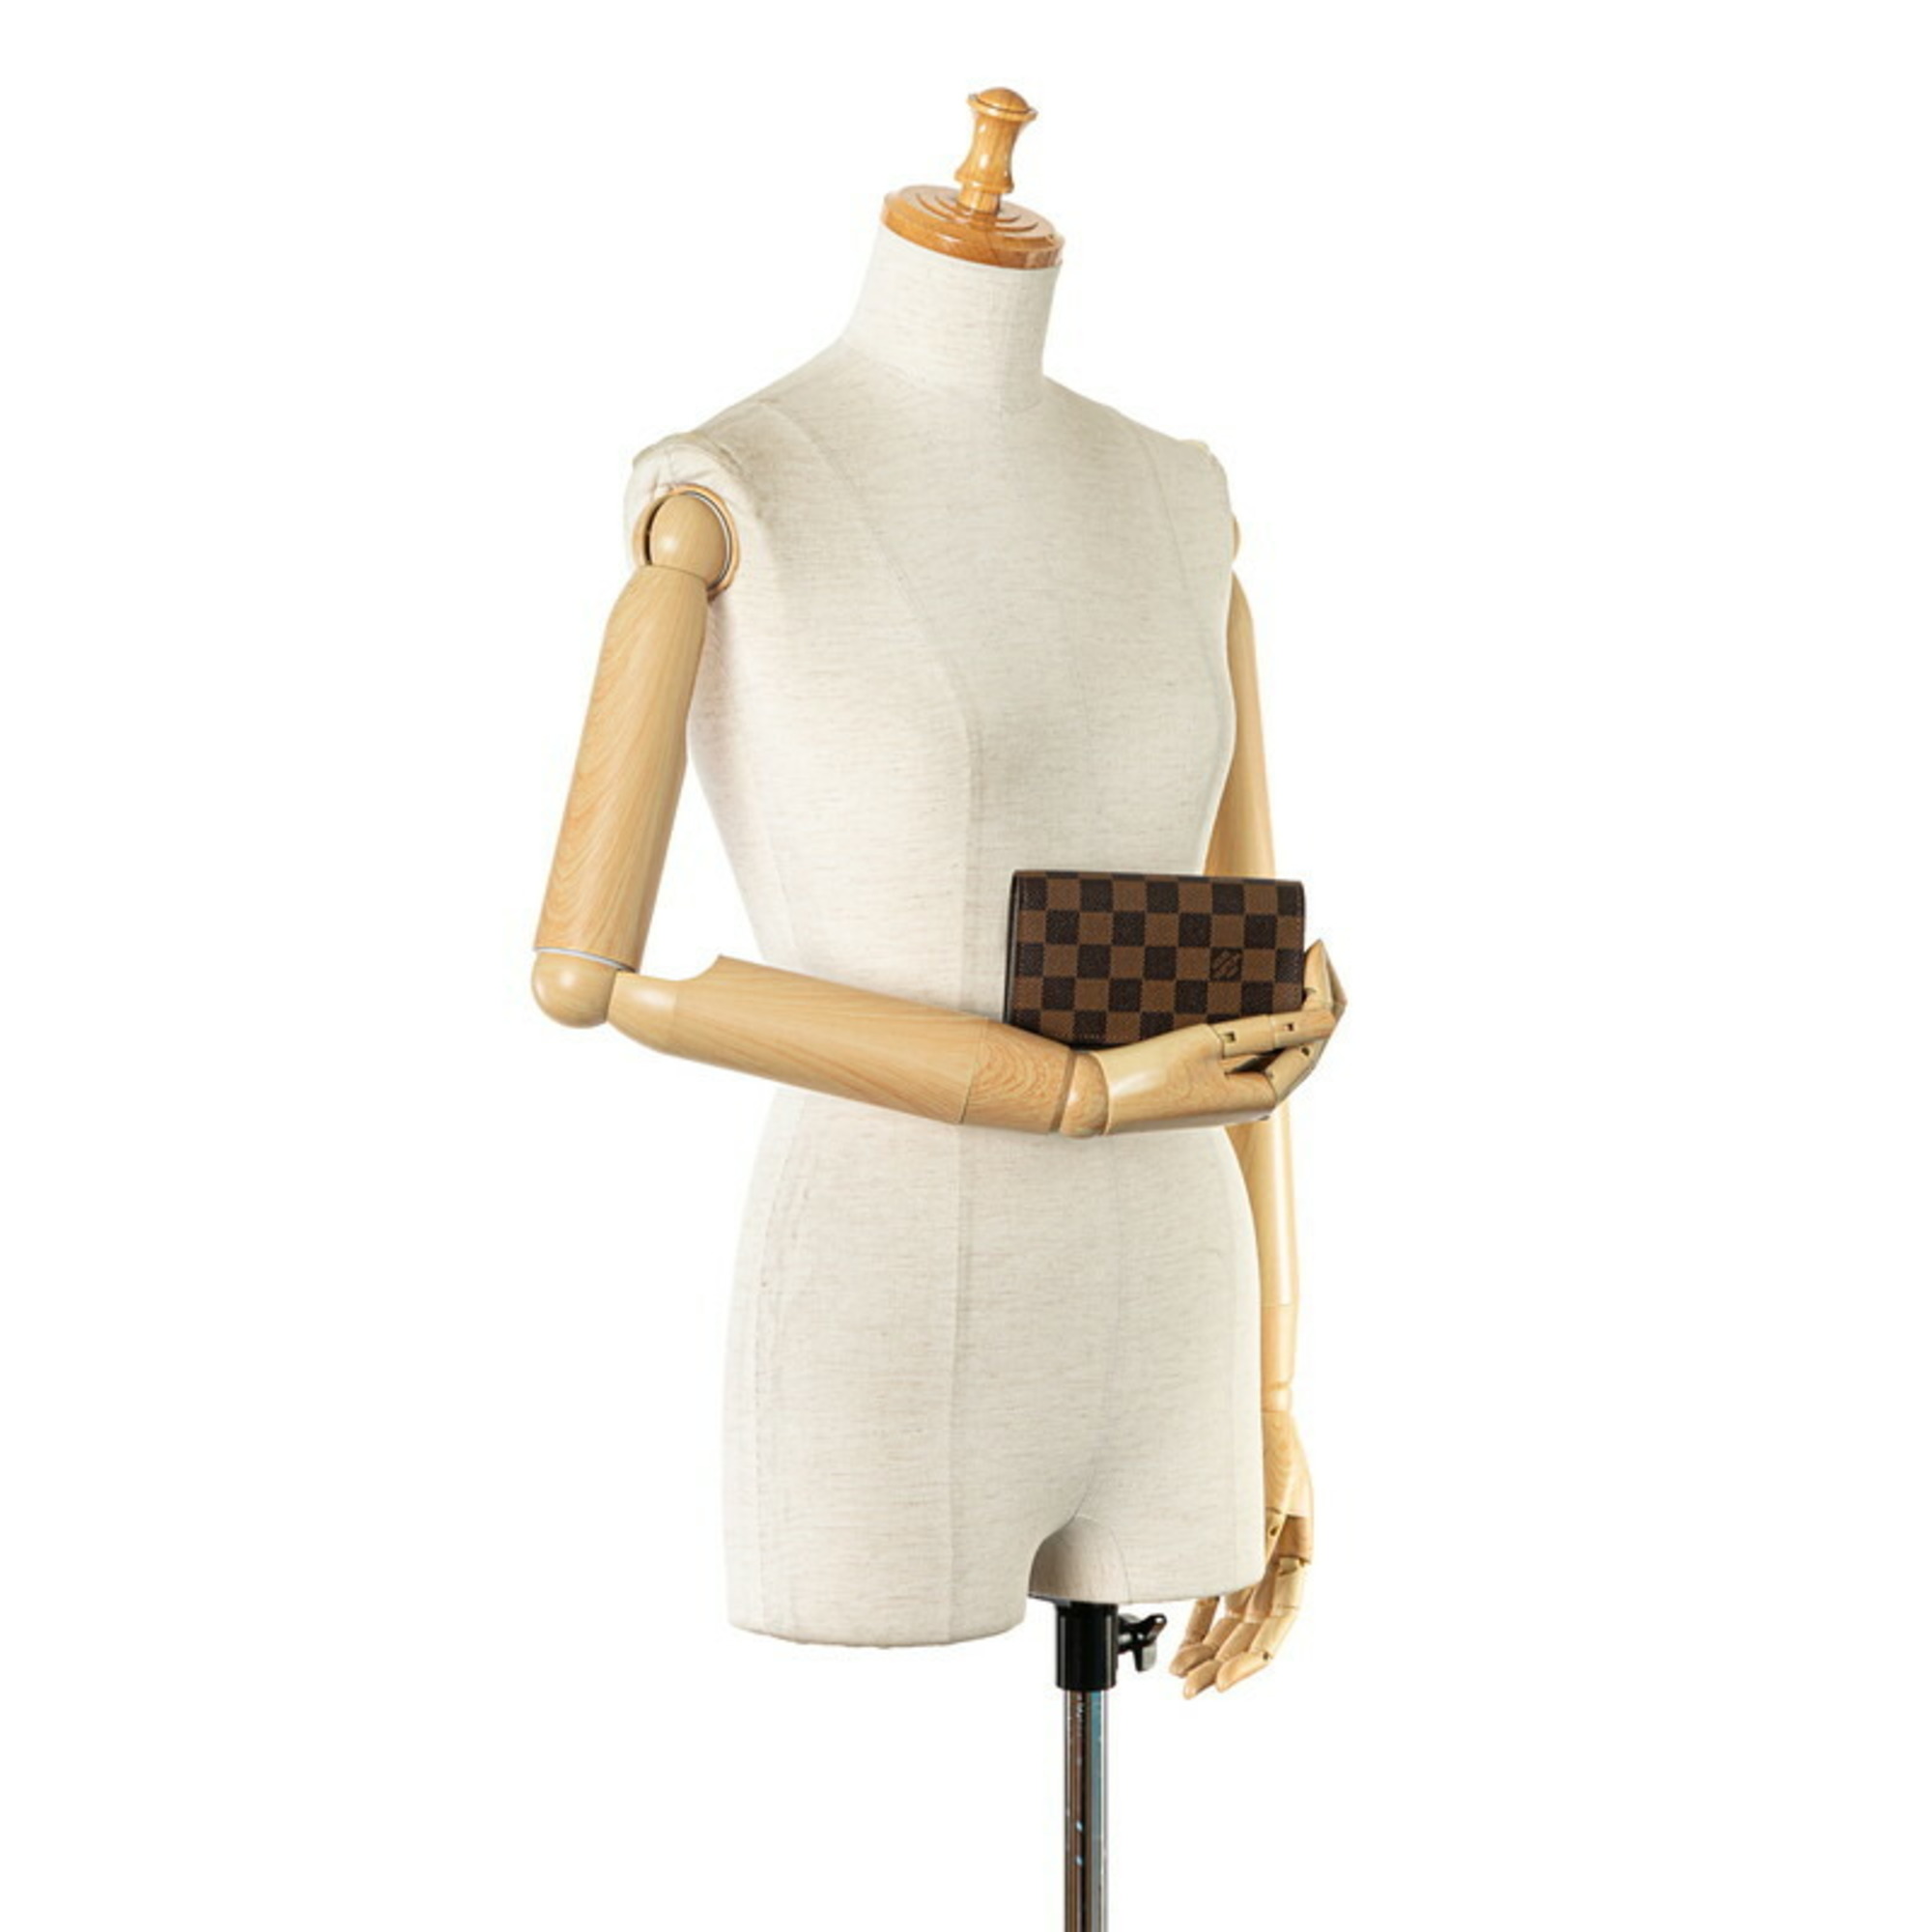 Louis Vuitton Damier Tresor Bi-fold Wallet N61736 Brown PVC Leather Women's LOUIS VUITTON